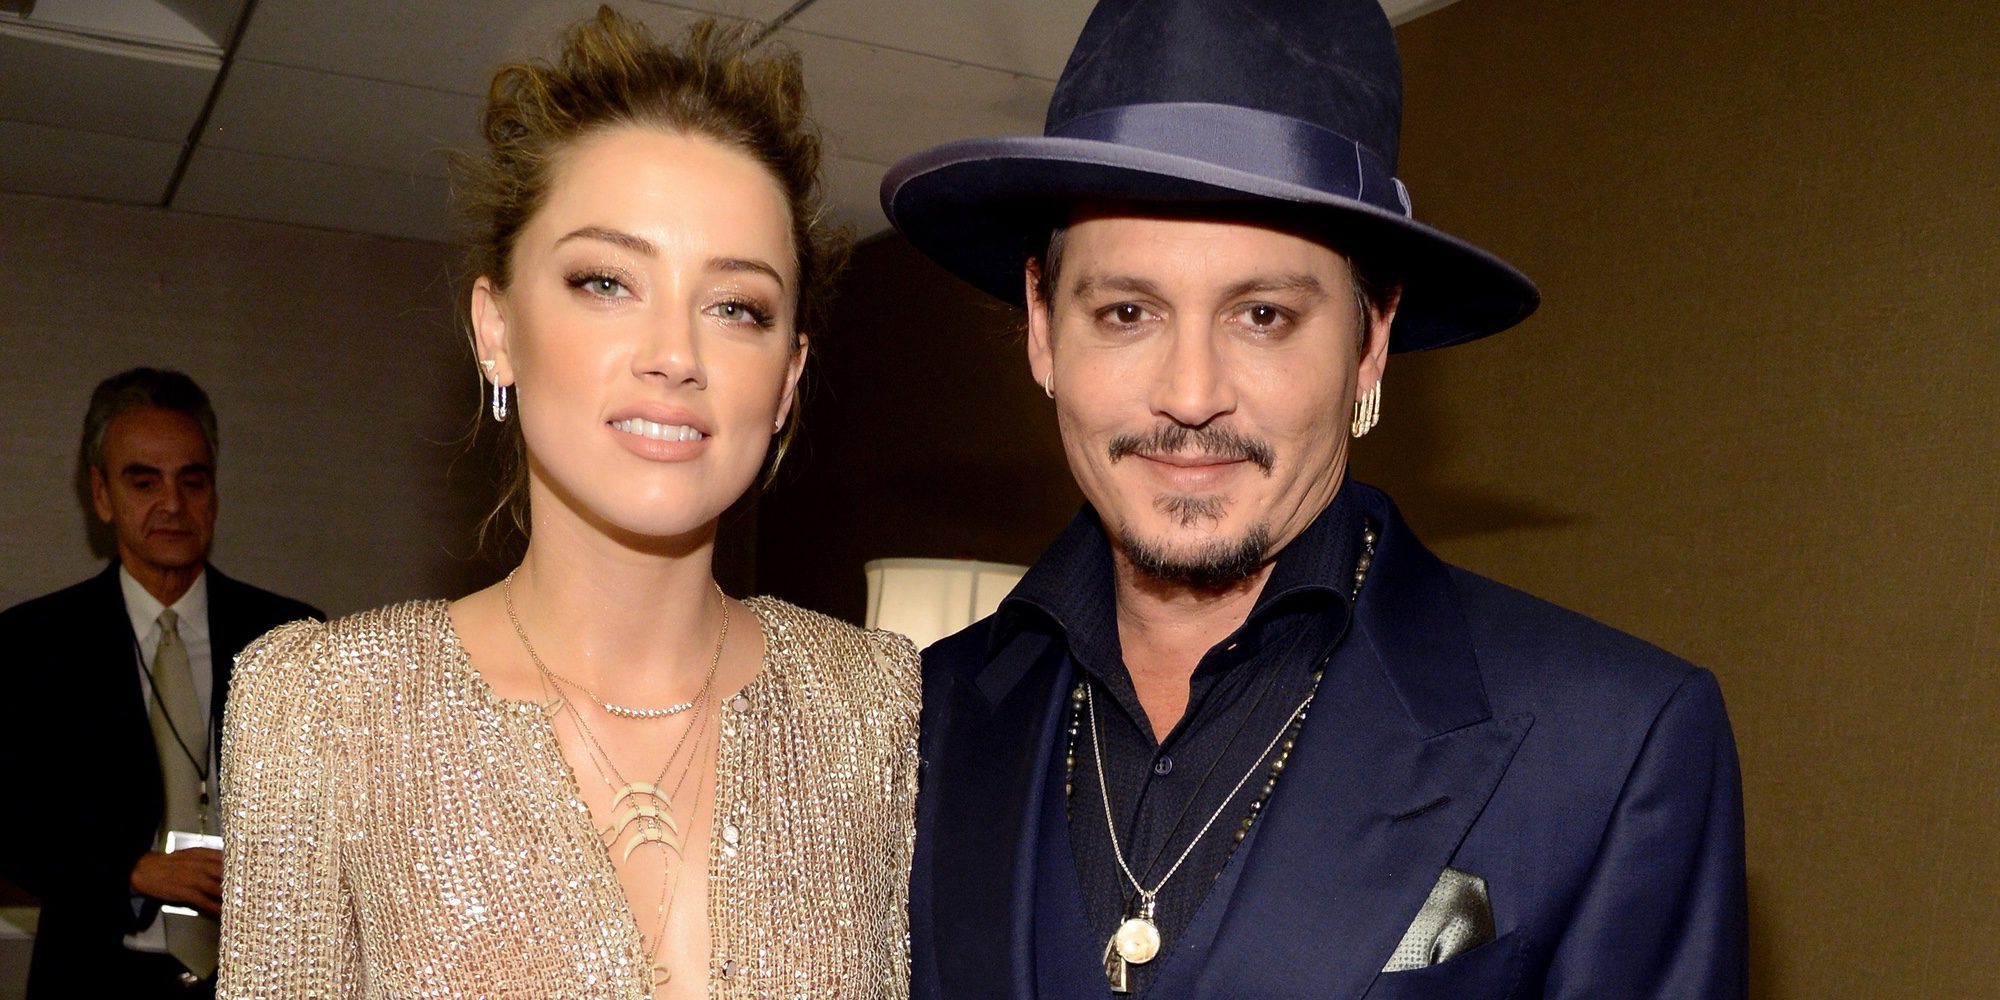 Se filtra un vídeo de Johnny Depp discutiendo con Amber Heard meses antes de separarse